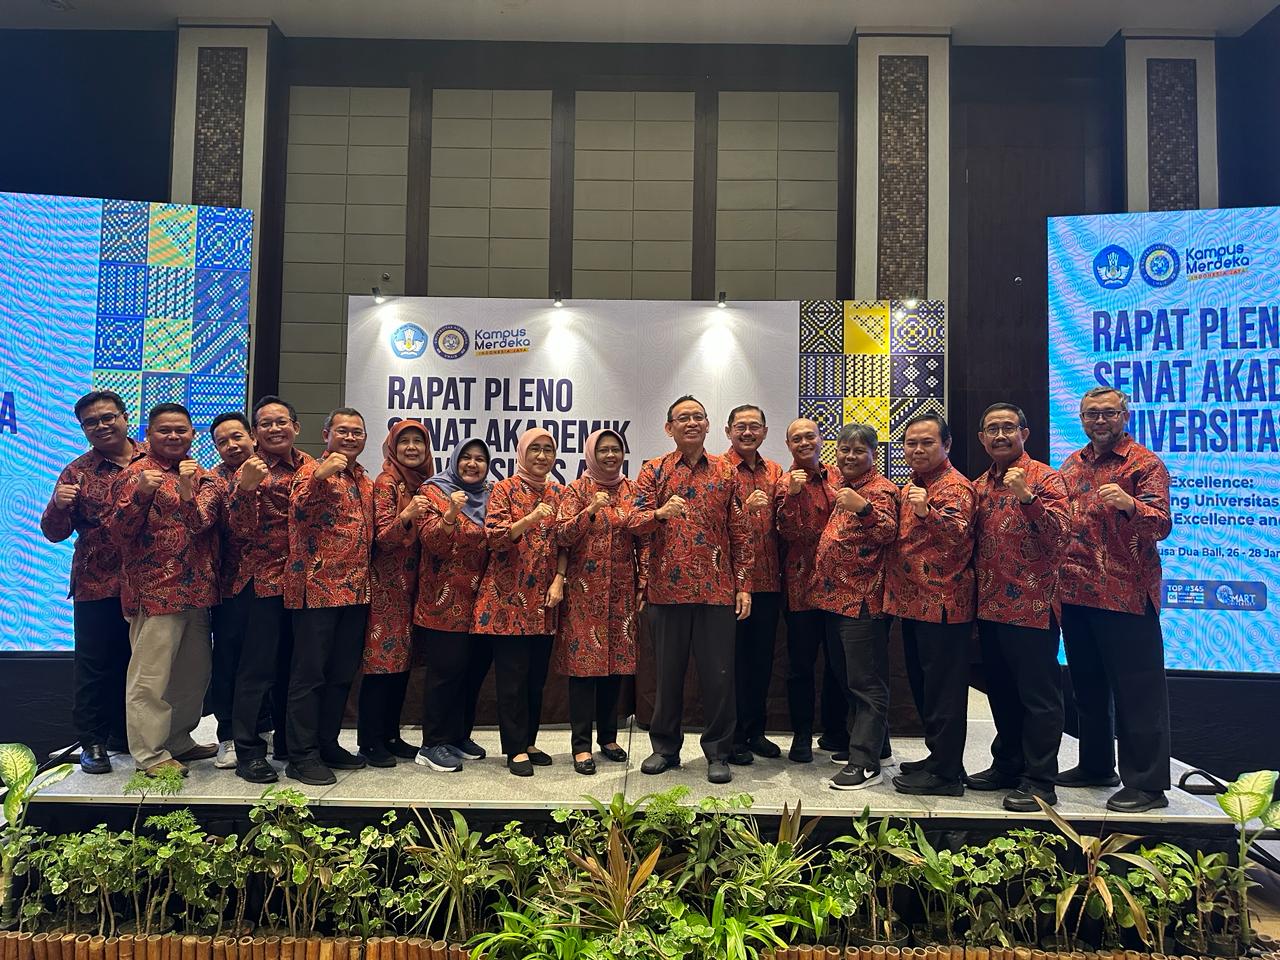 Rapat Senat Akademik Universitas Airlangga di Bali: Membangun Kualitas, Ranking Hanya Implikasi